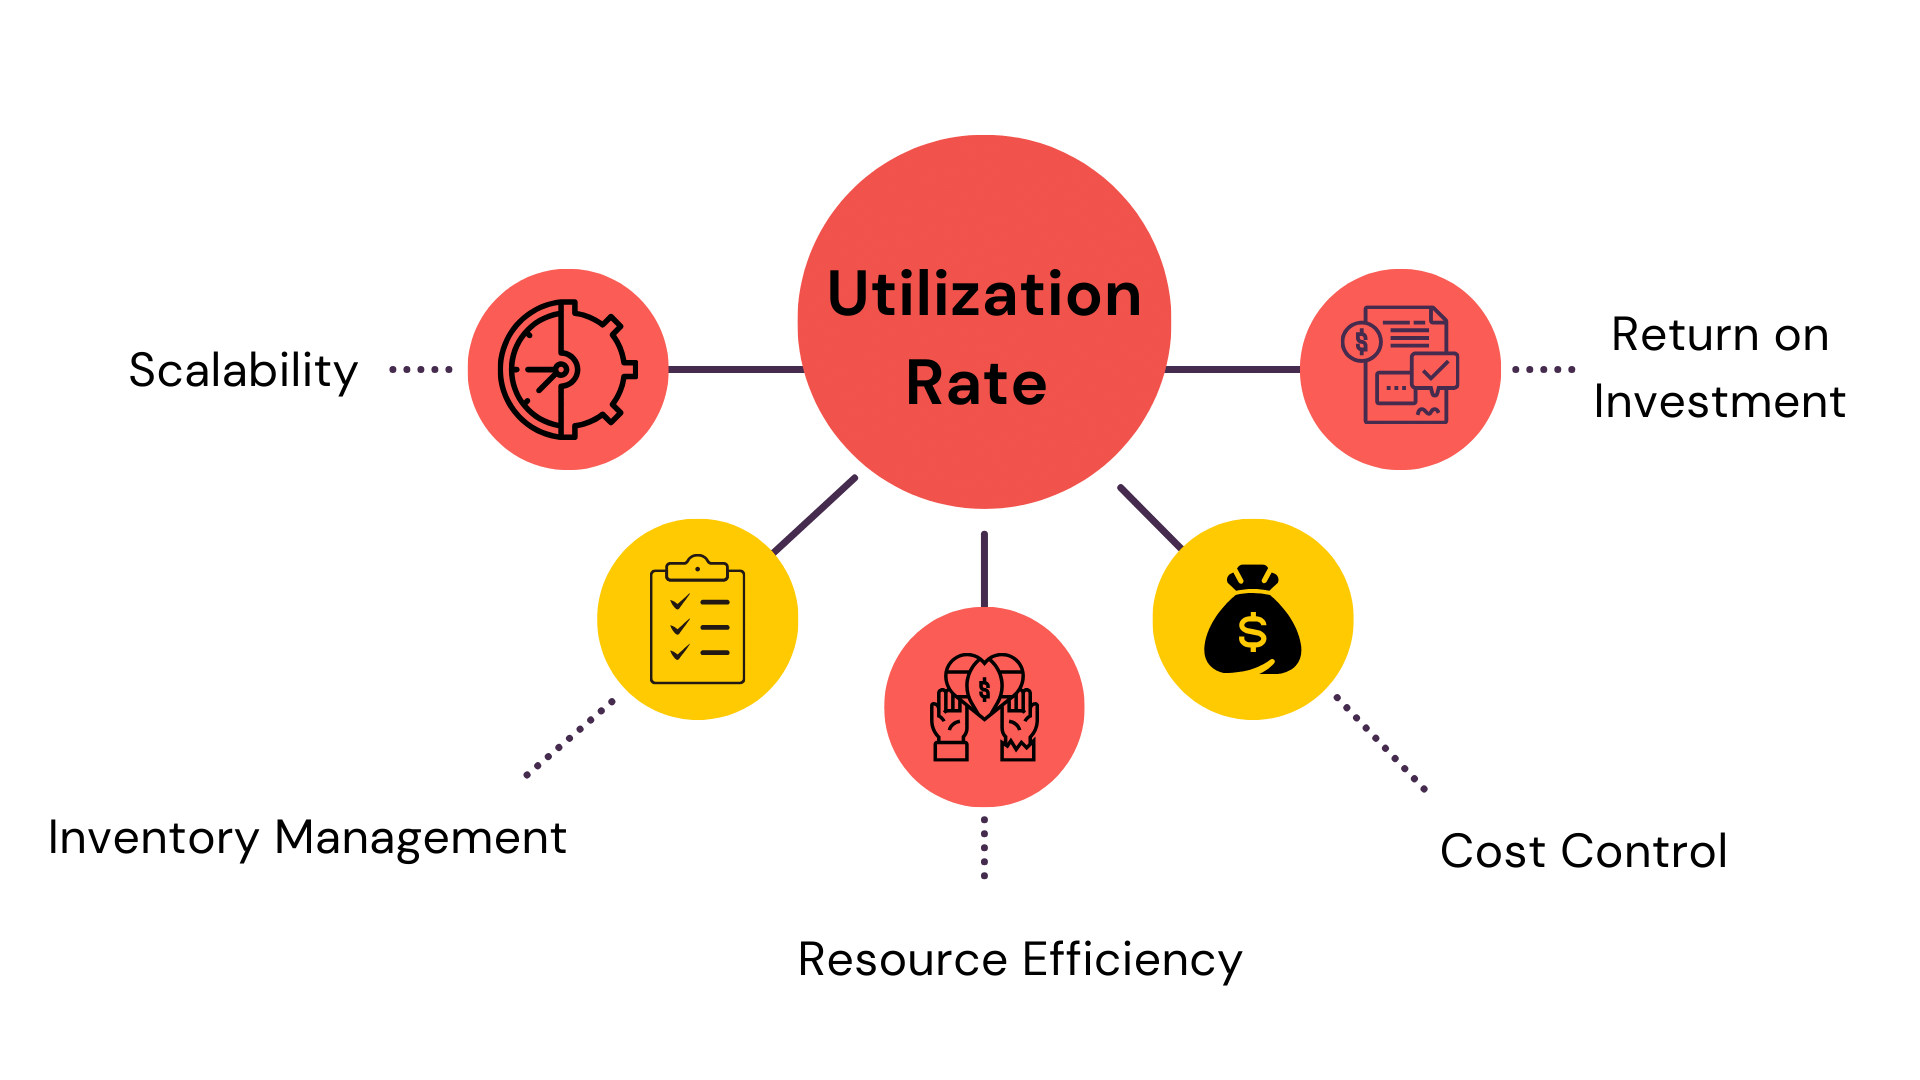 Utilization Rate